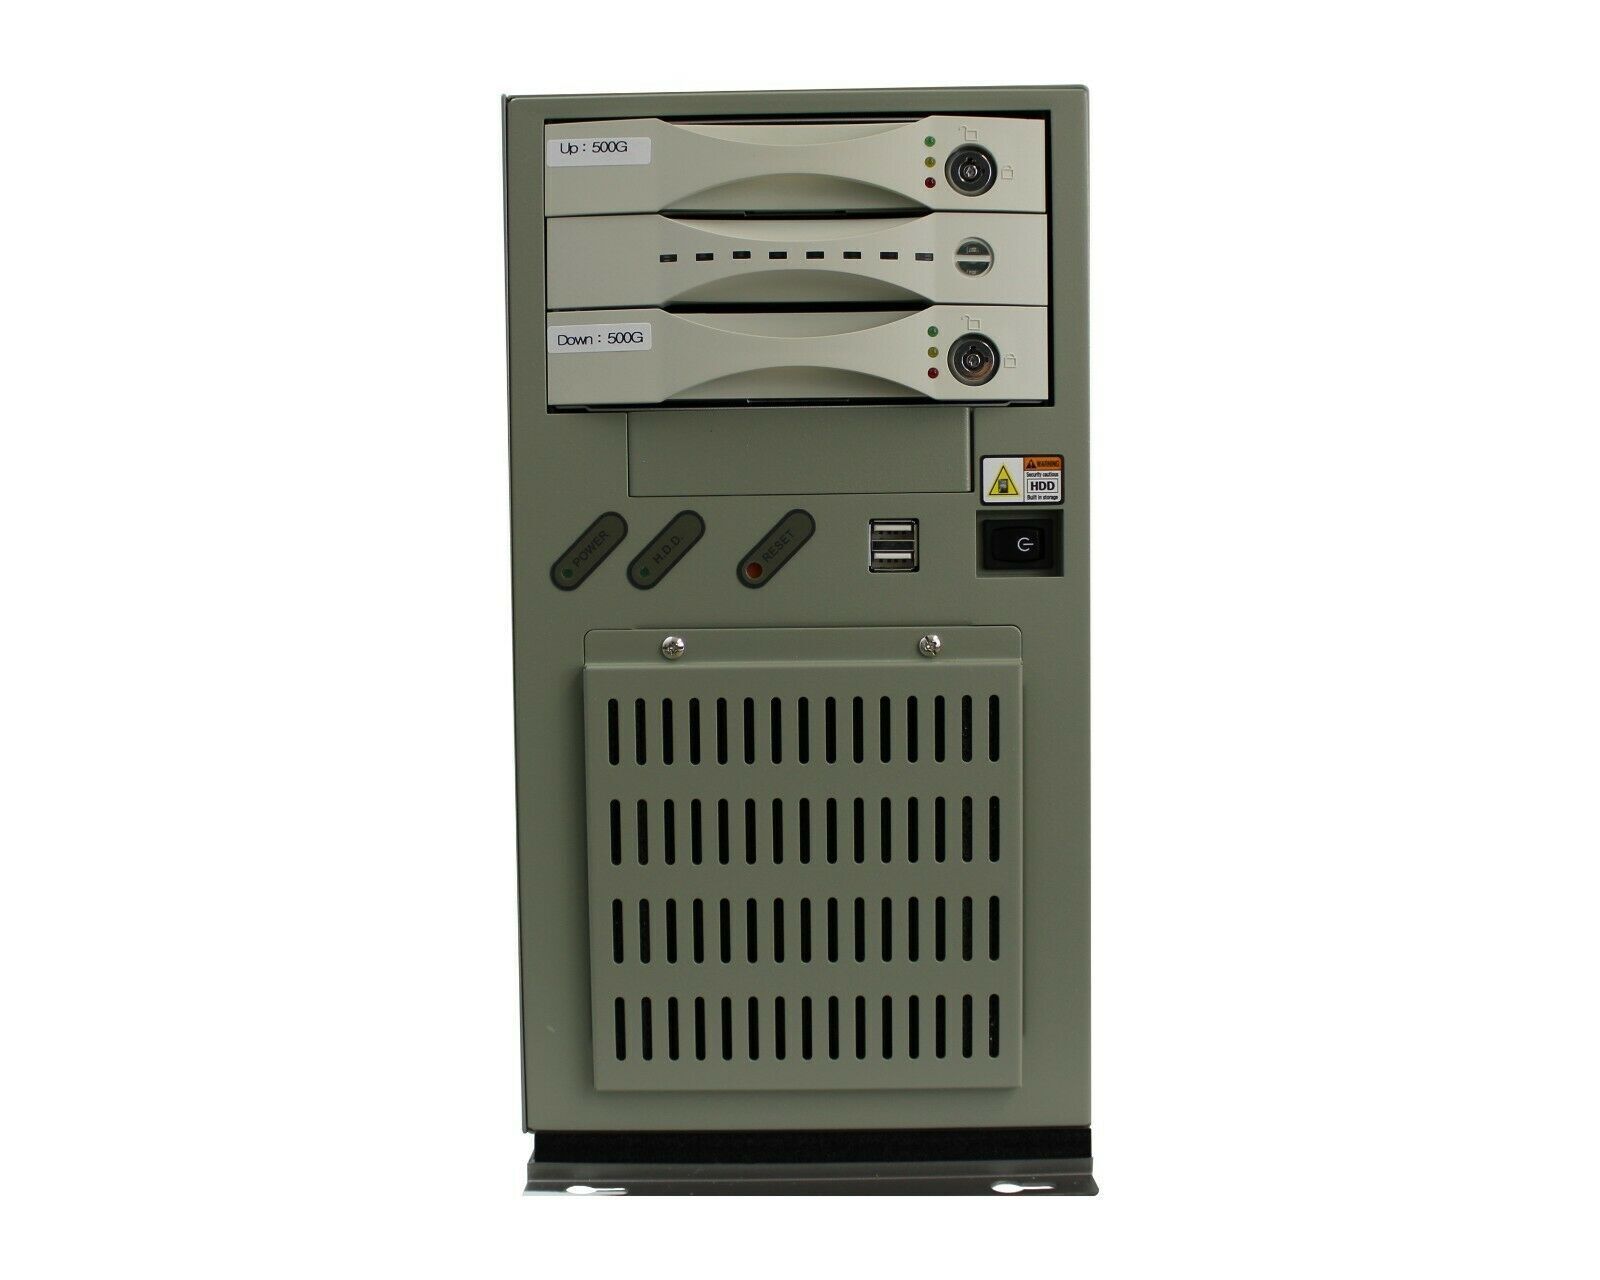 ADVANTECH DESKTOP CPU IPC-6608, 8-SLOT DESKTOP/WALL MOUNT CHASSIS